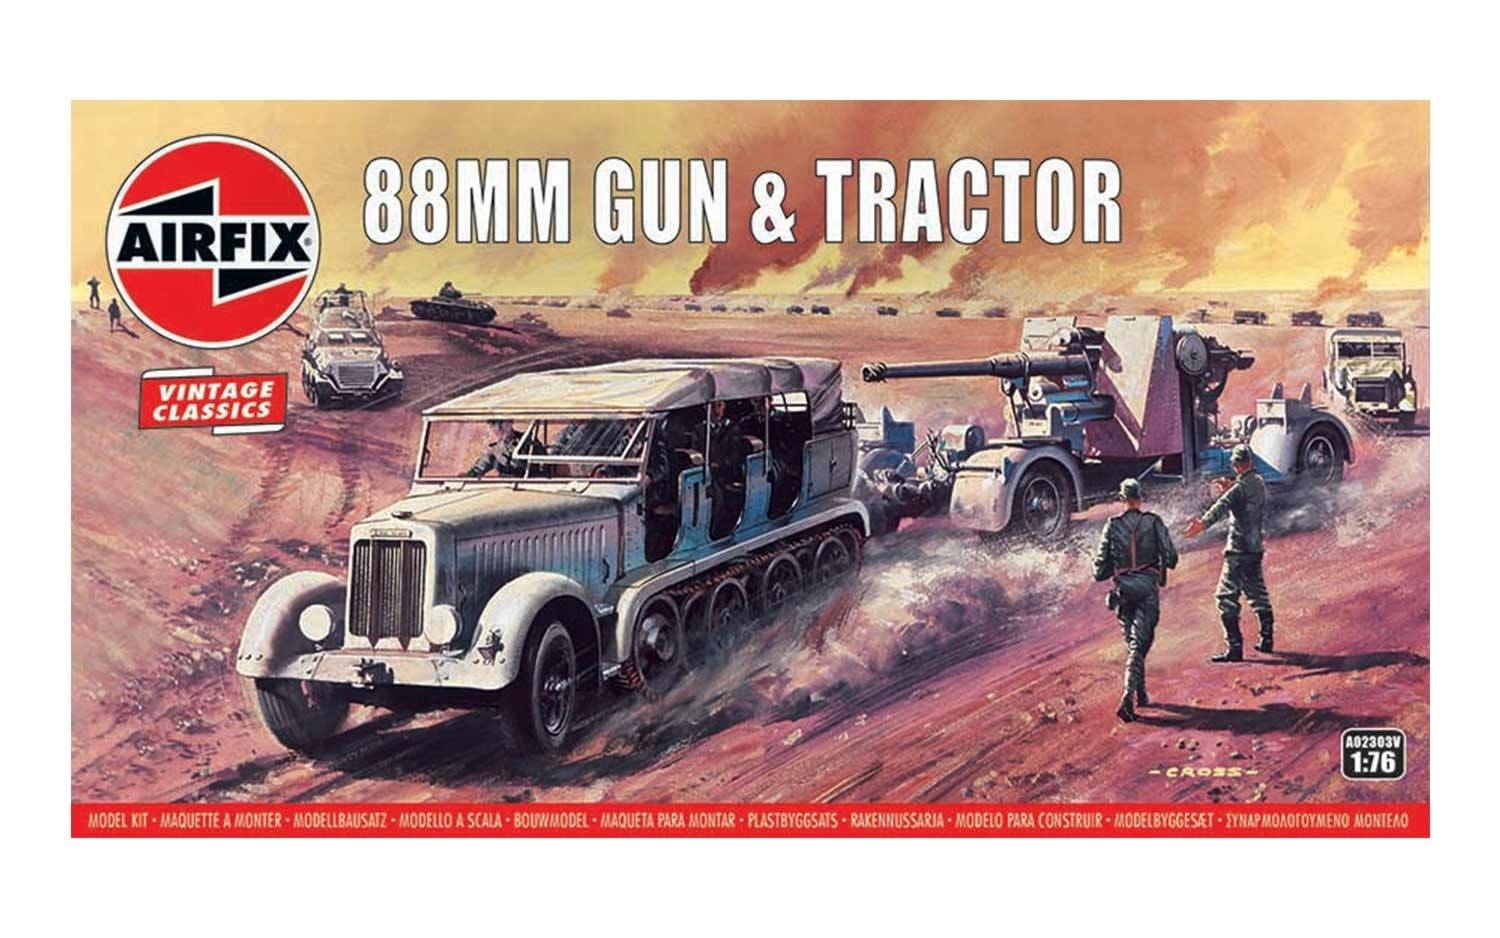 Vintage Classics - 88mm Gun & Tractor